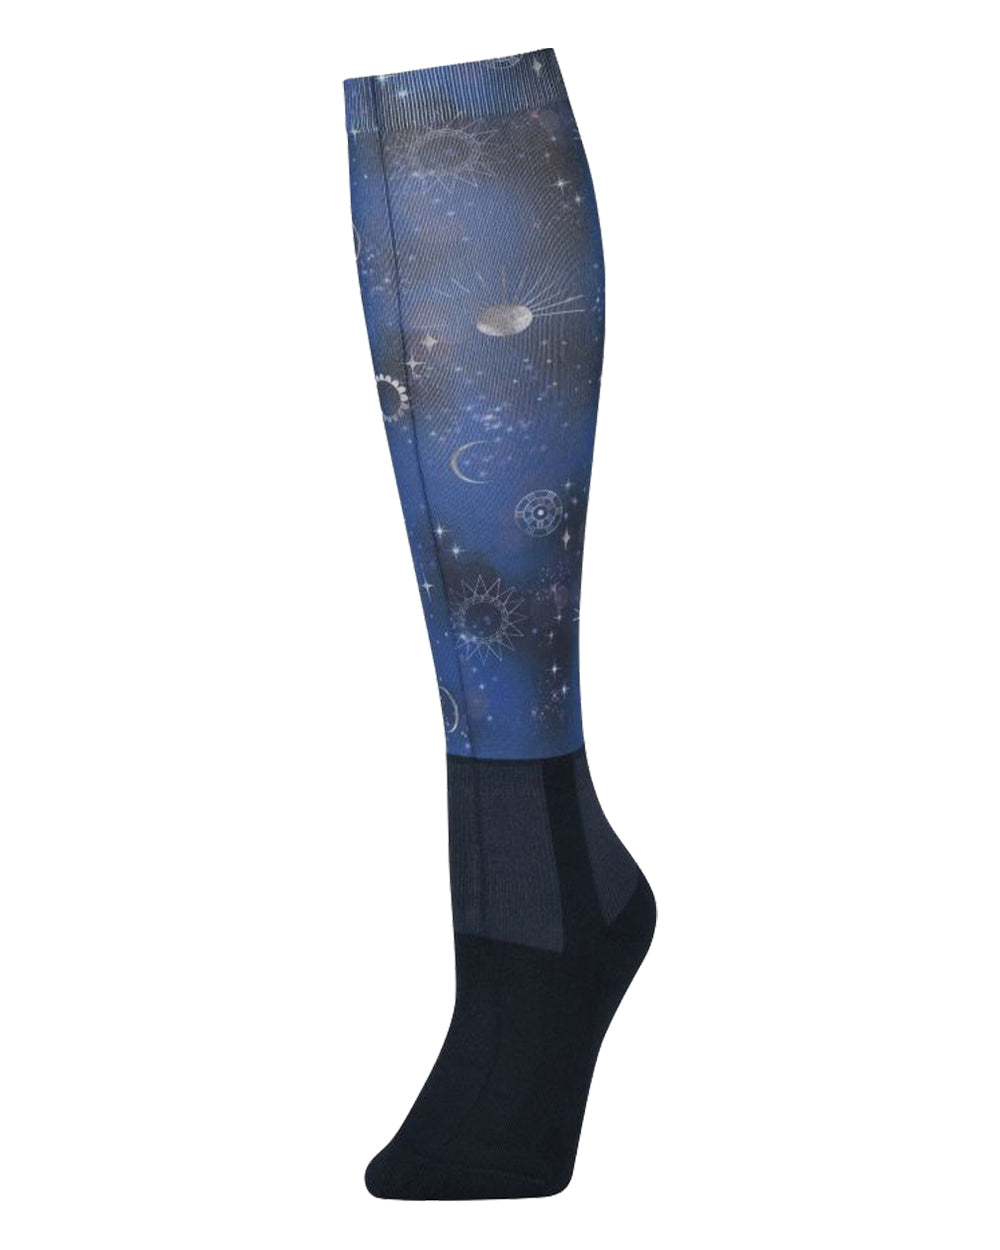 Starry Night Dublin Stocking Socks on White background 